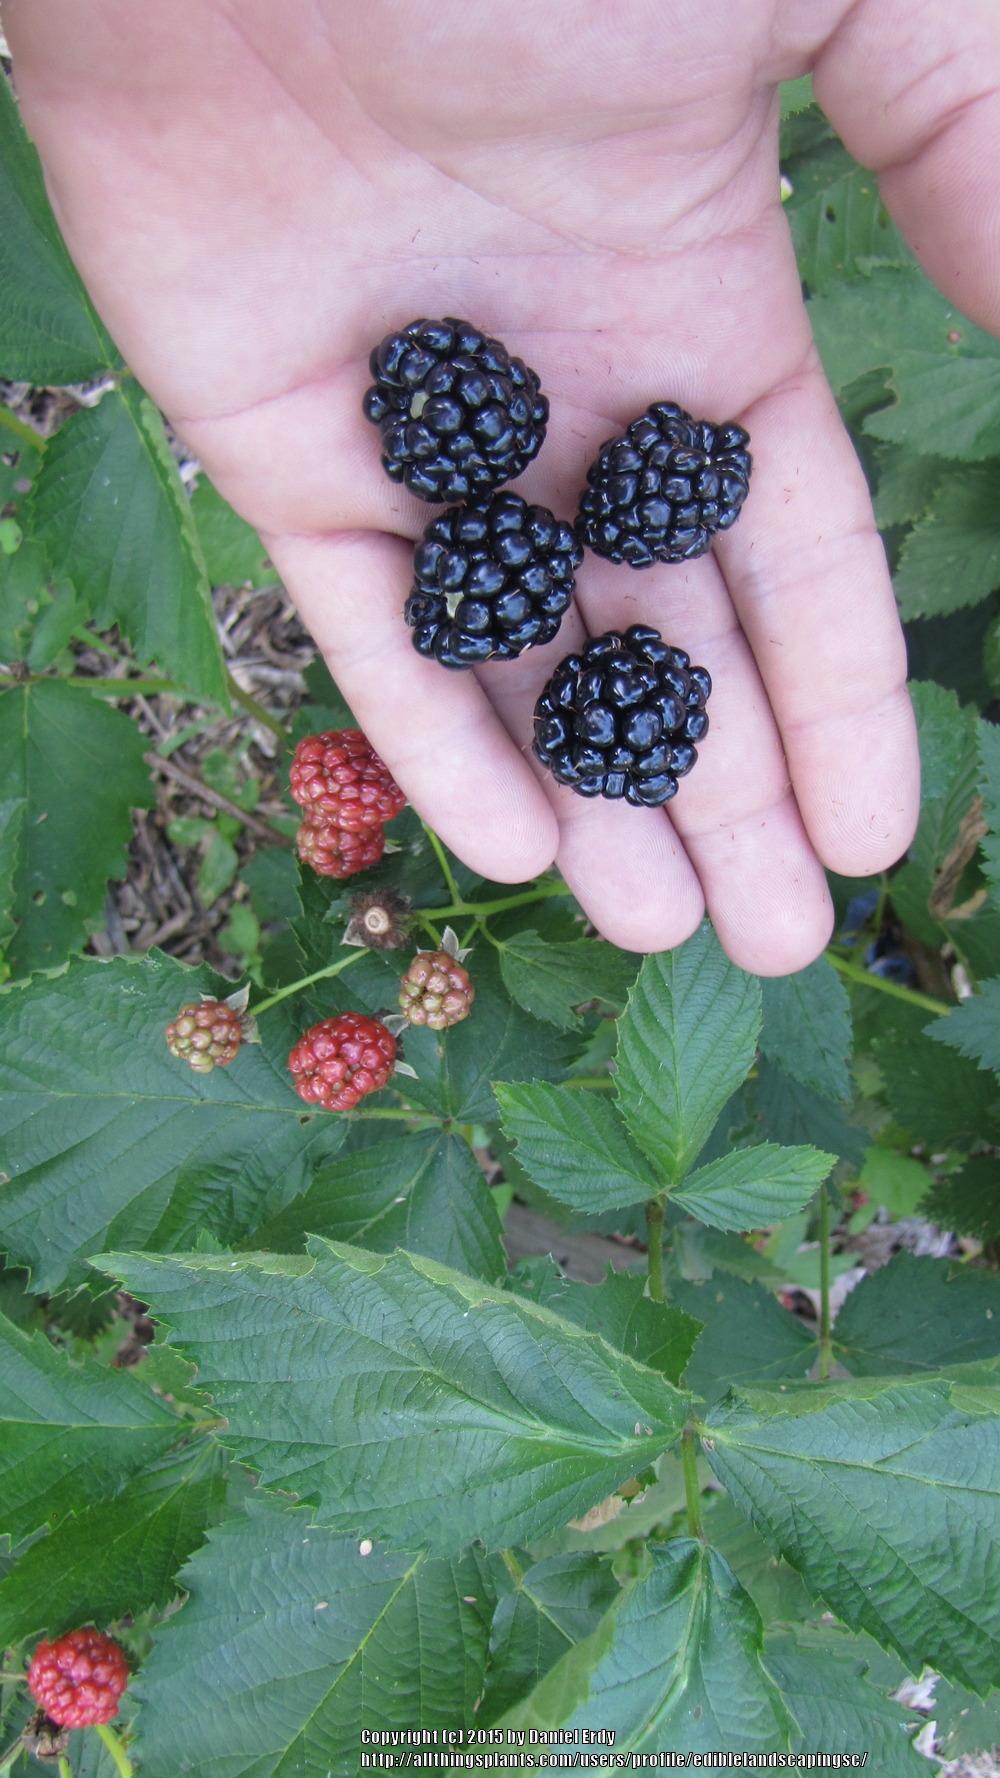 Photo of Thornless Blackberry (Rubus 'Arapaho') uploaded by ediblelandscapingsc